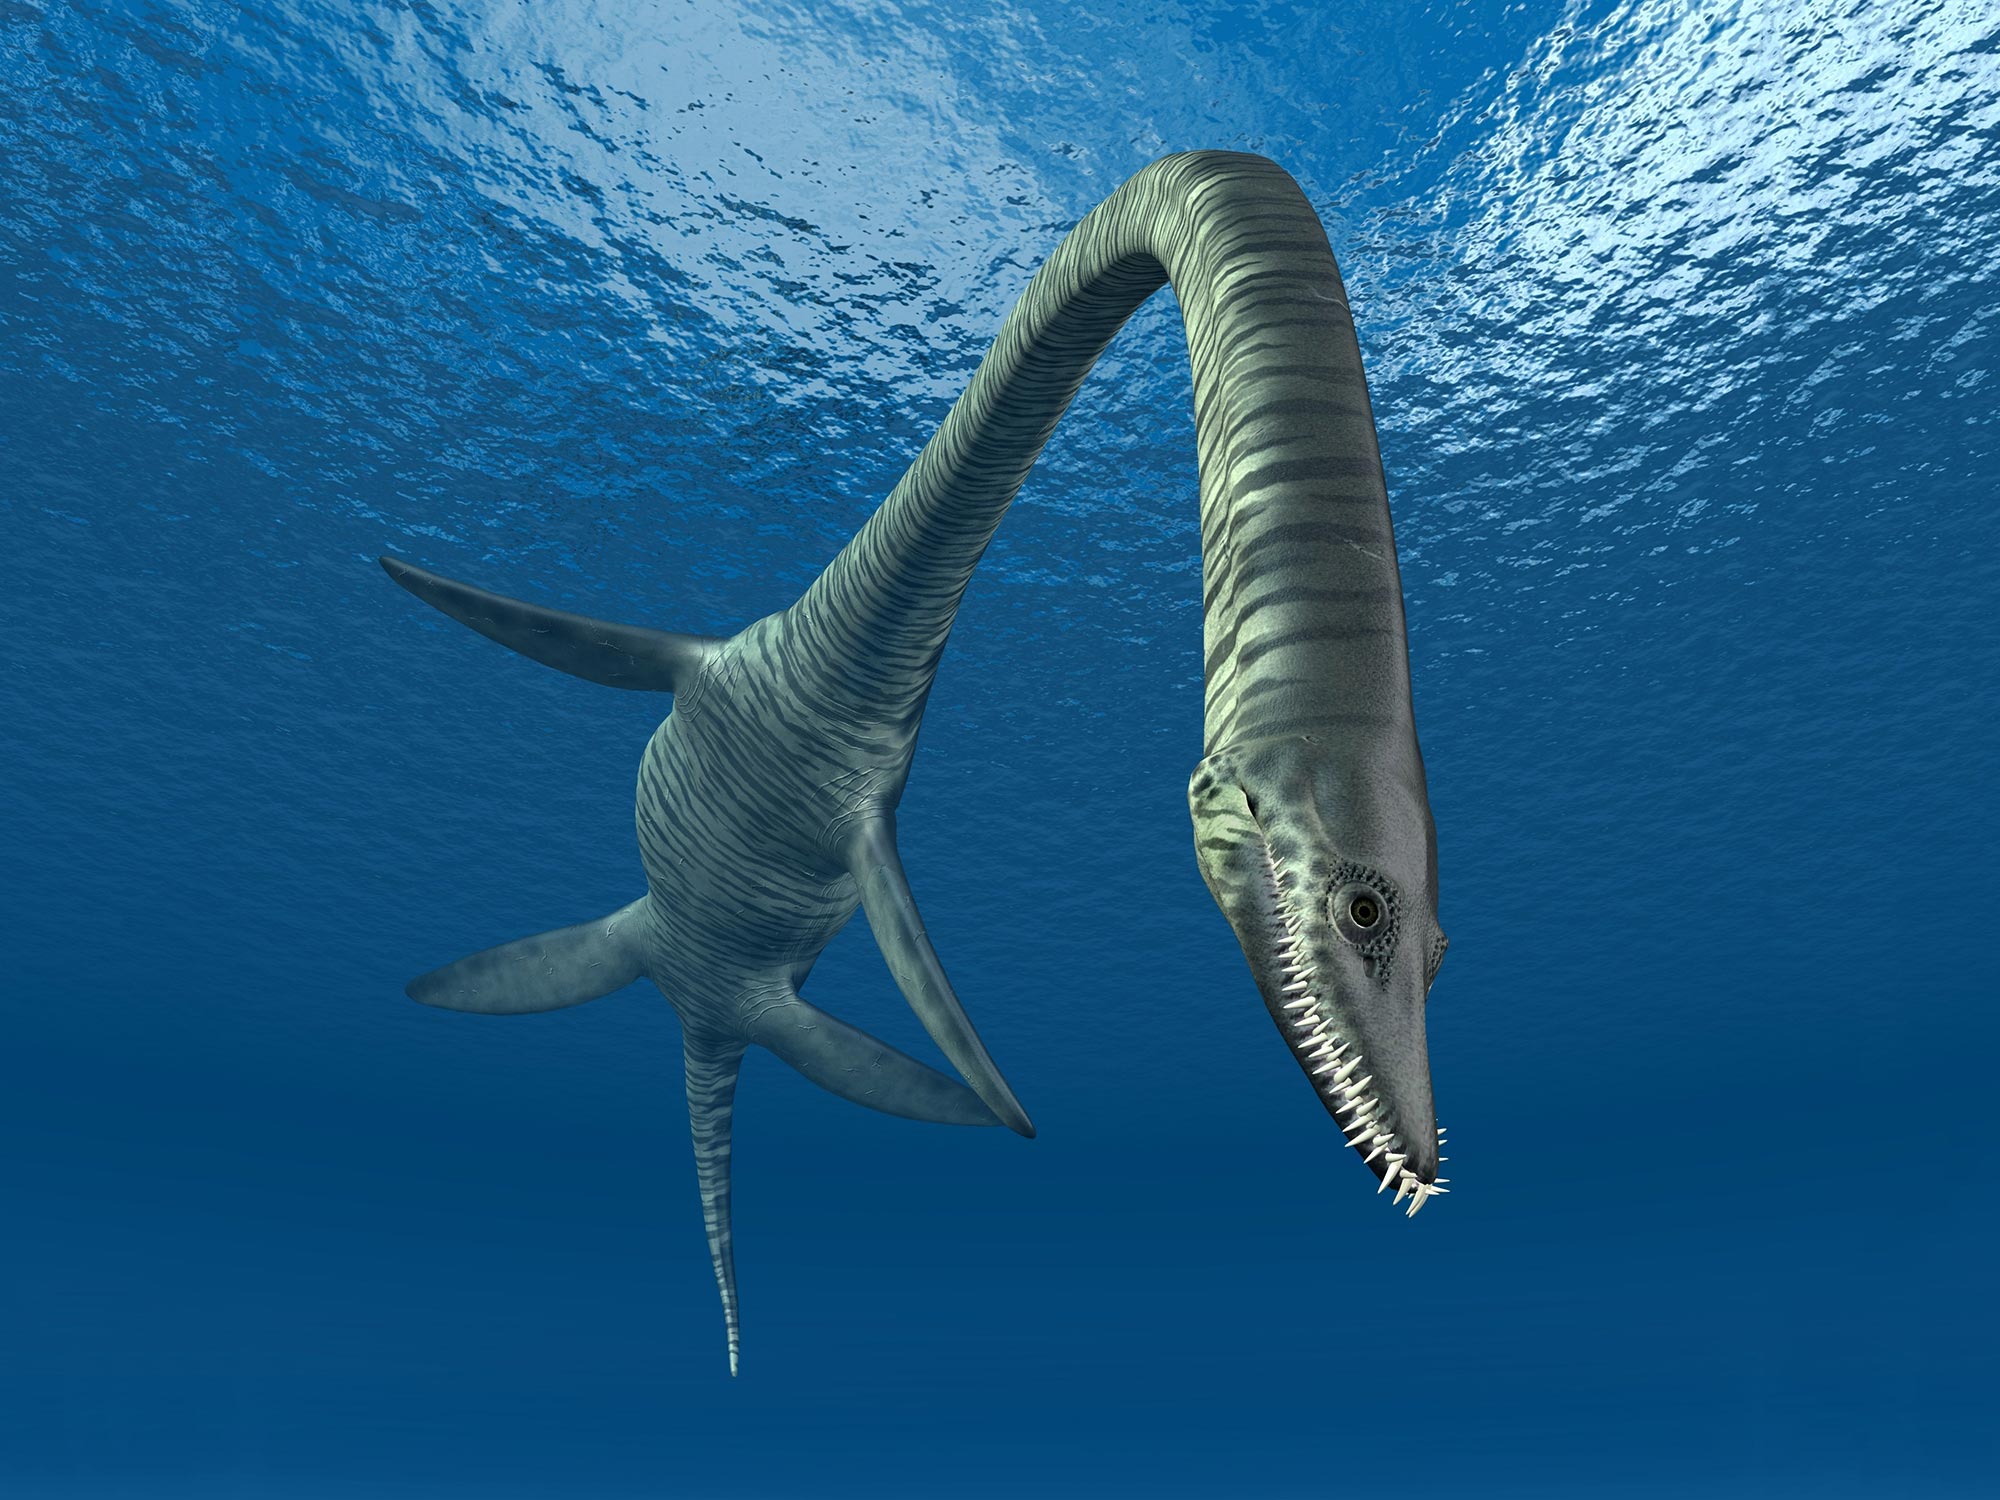 Plesiosaurus menggandakan panjang lehernya dengan memperoleh tulang belakang baru